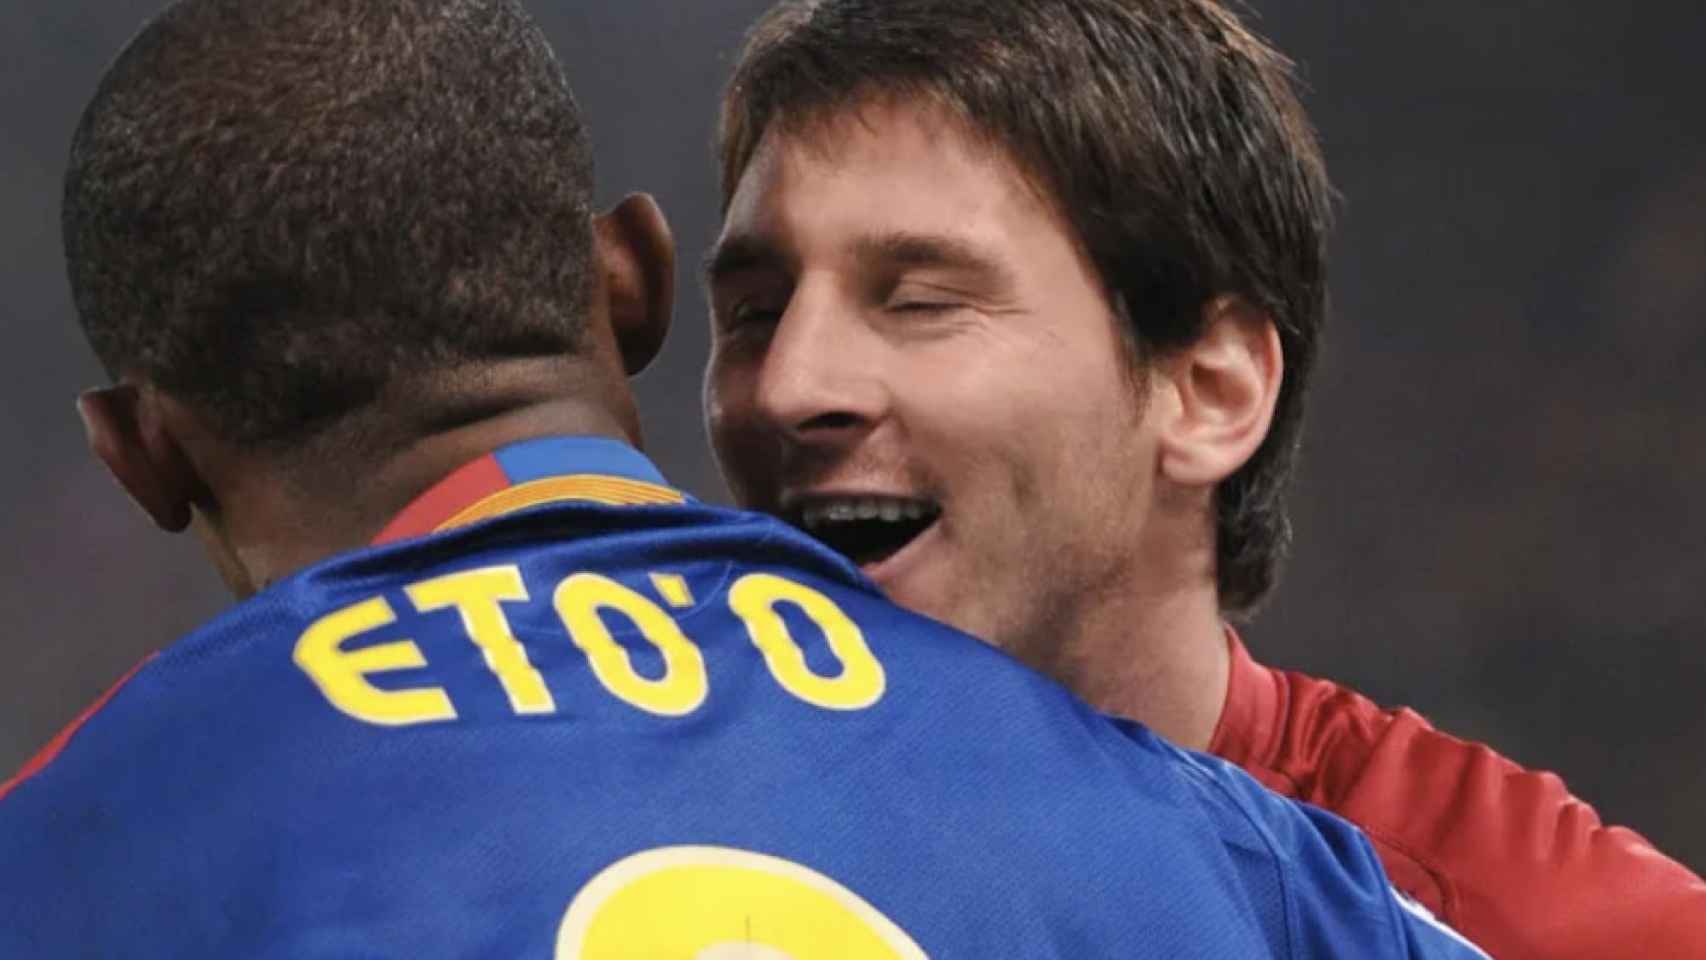 Una foto de Leo Messi y Samuel Eto'o durante un partido del Barça / Twitter